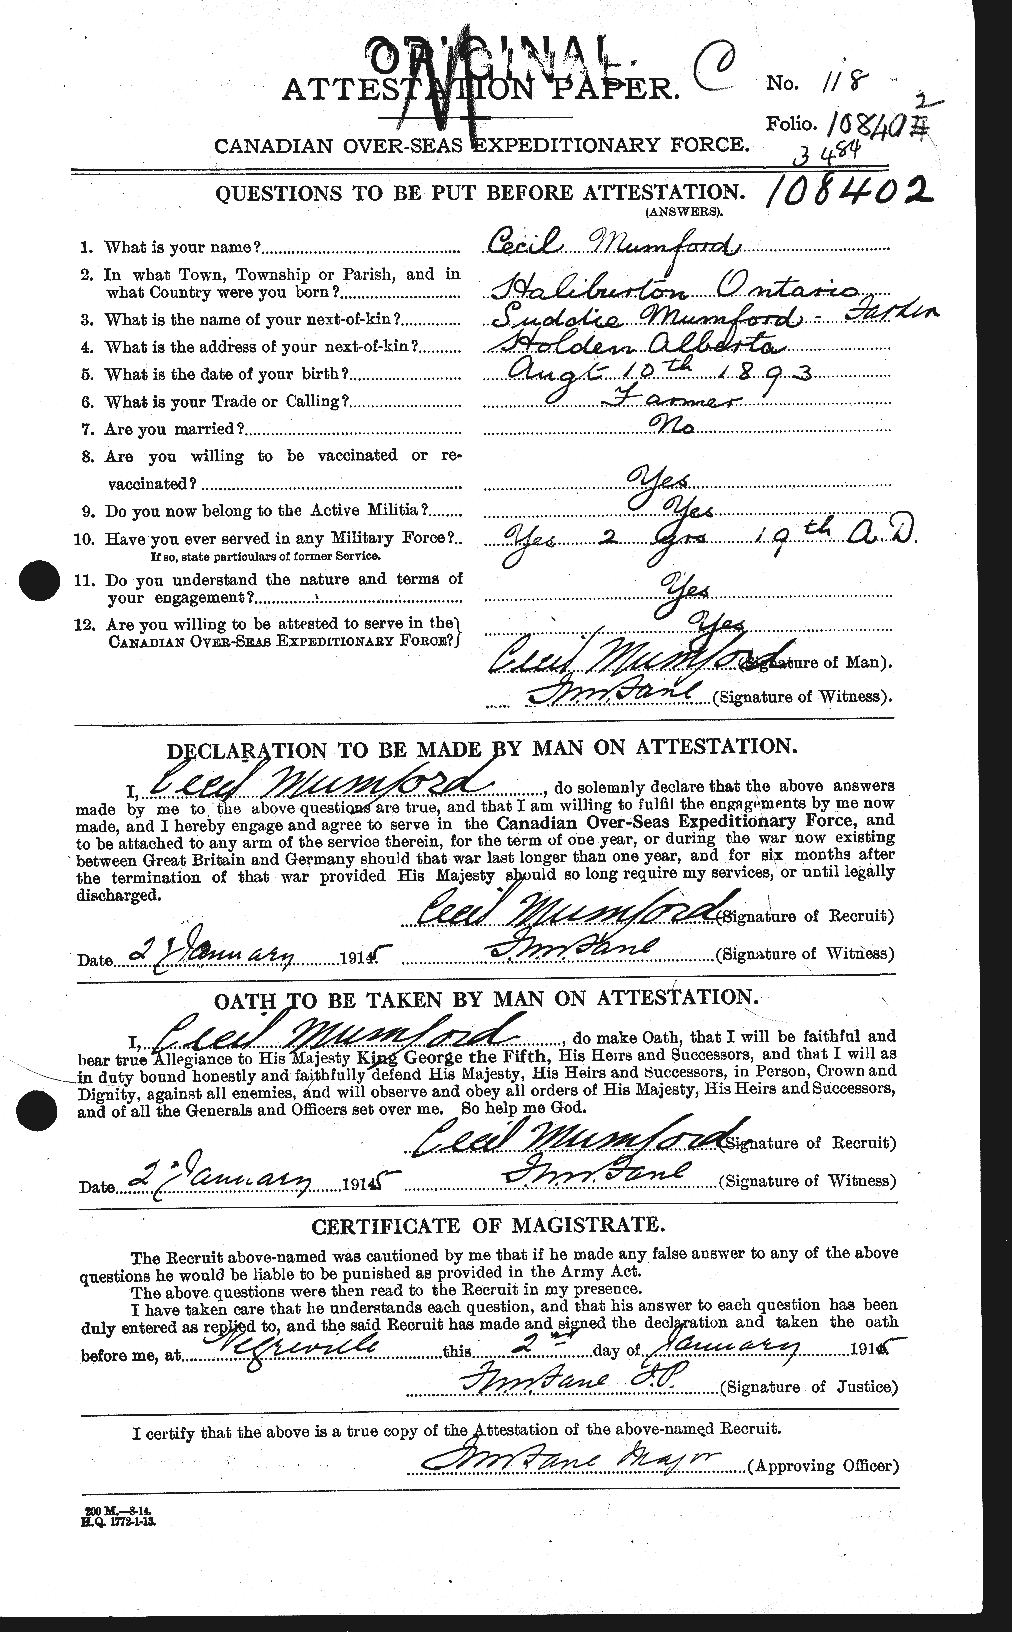 Dossiers du Personnel de la Première Guerre mondiale - CEC 513621a